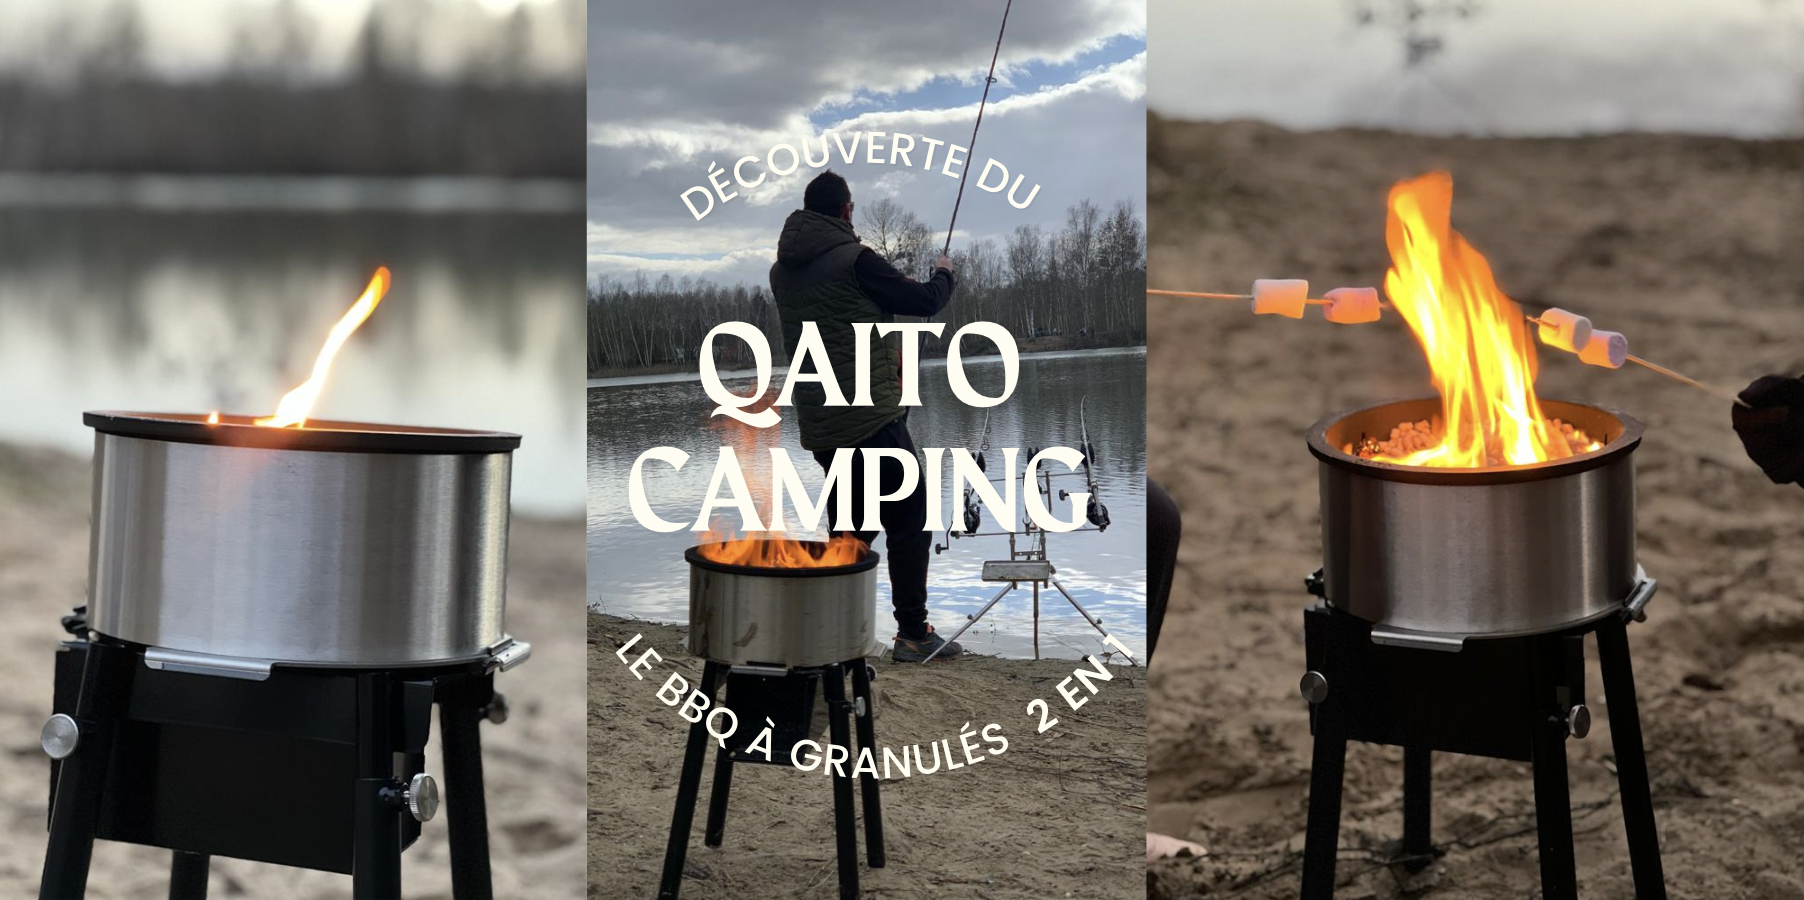 QAITO CAMPING : Le BBQ à granulés 2 en 1